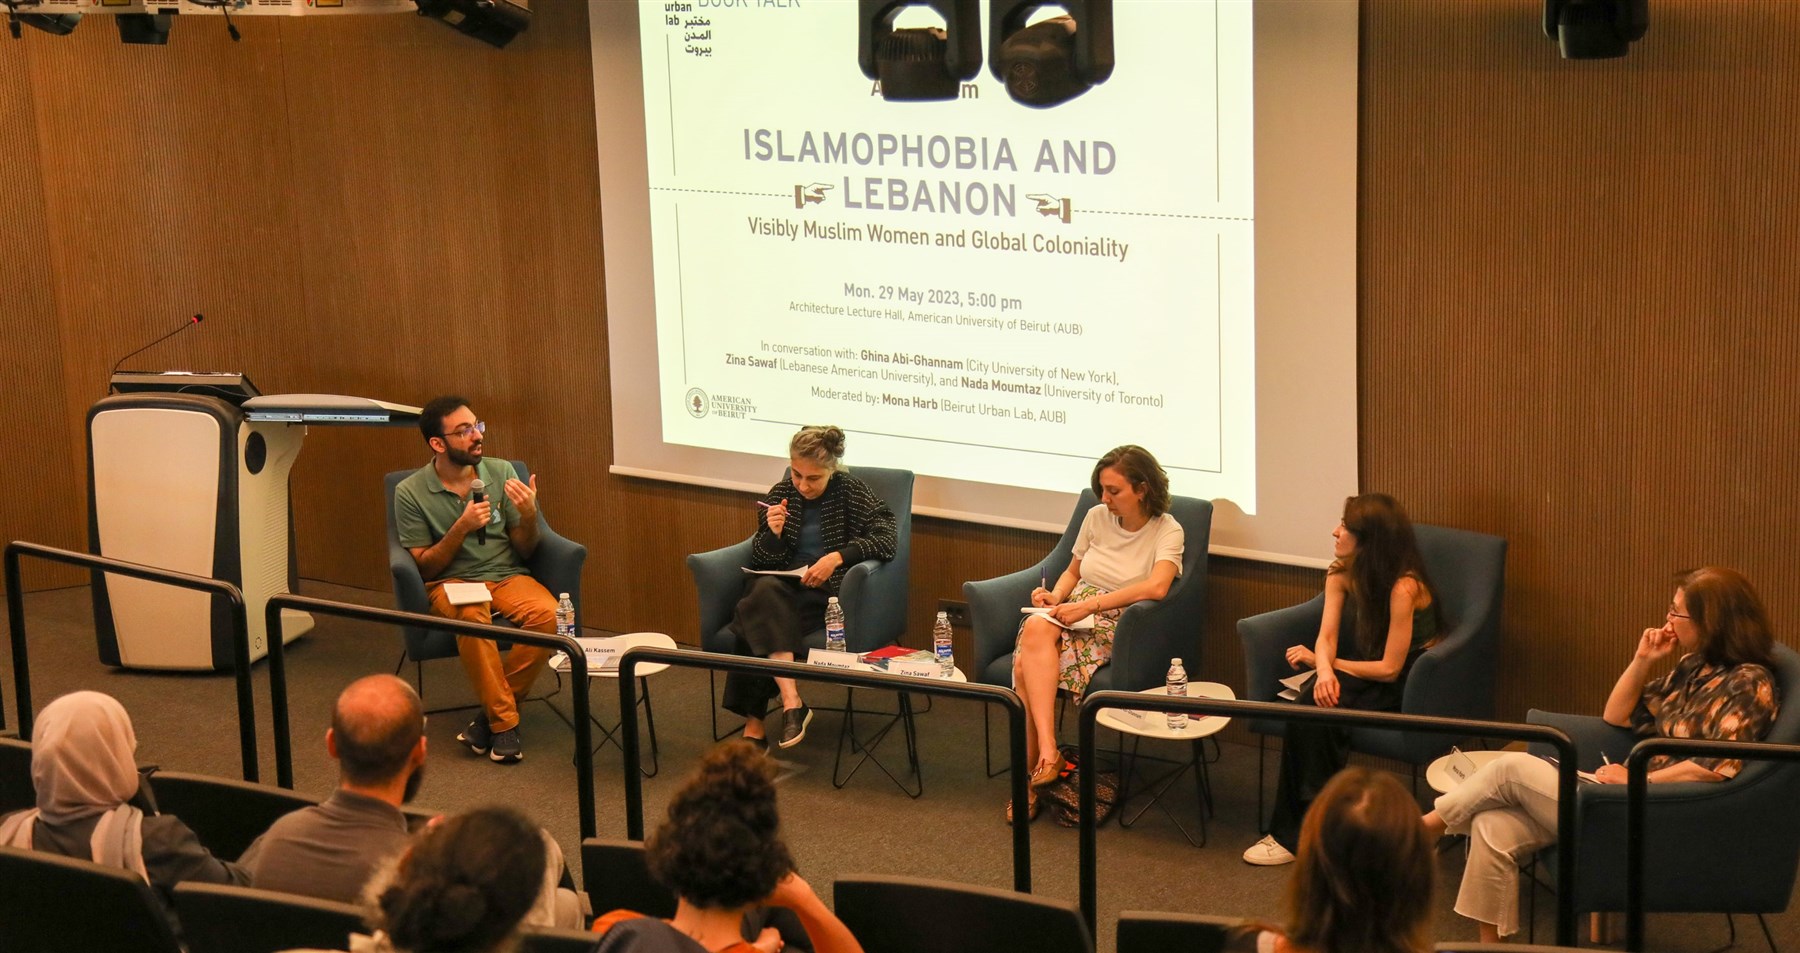 مناقشة كتاب: الإسلاموفوبيا ولبنان: النساء المسلمات المحجبات والكولونالية العالمية